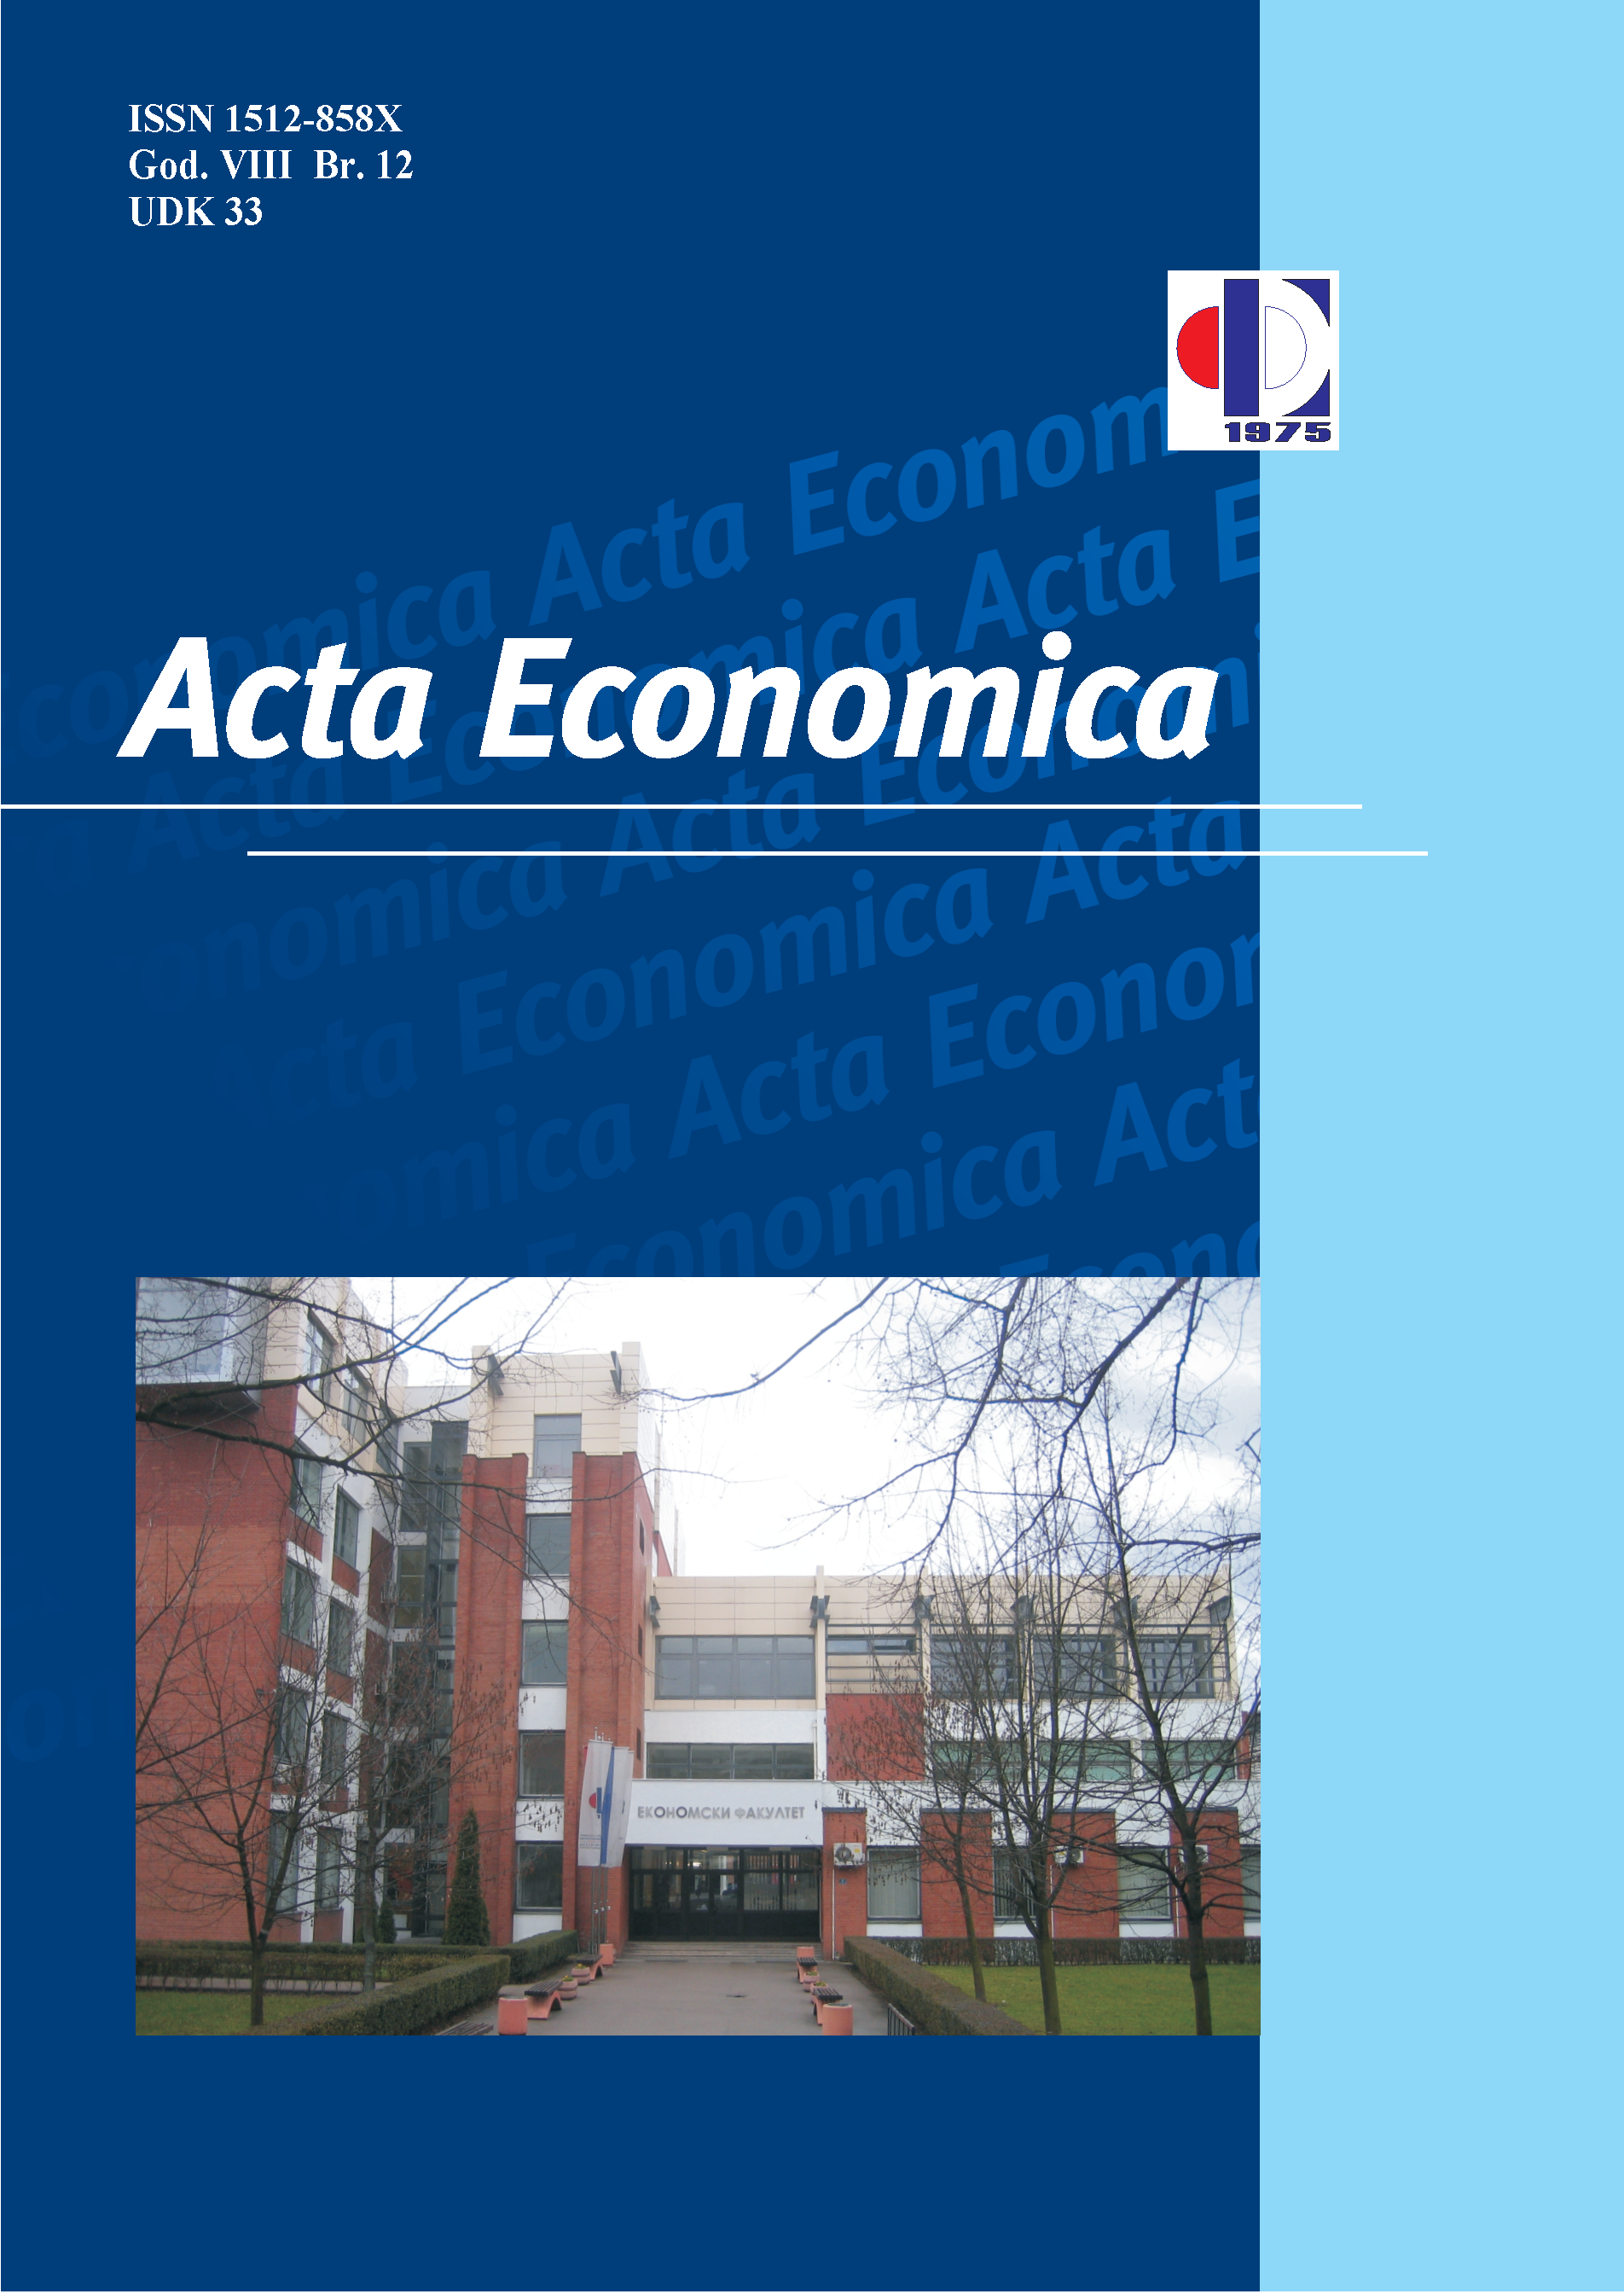 					View Vol. 12 No. 21 (2014): Acta Economica
				